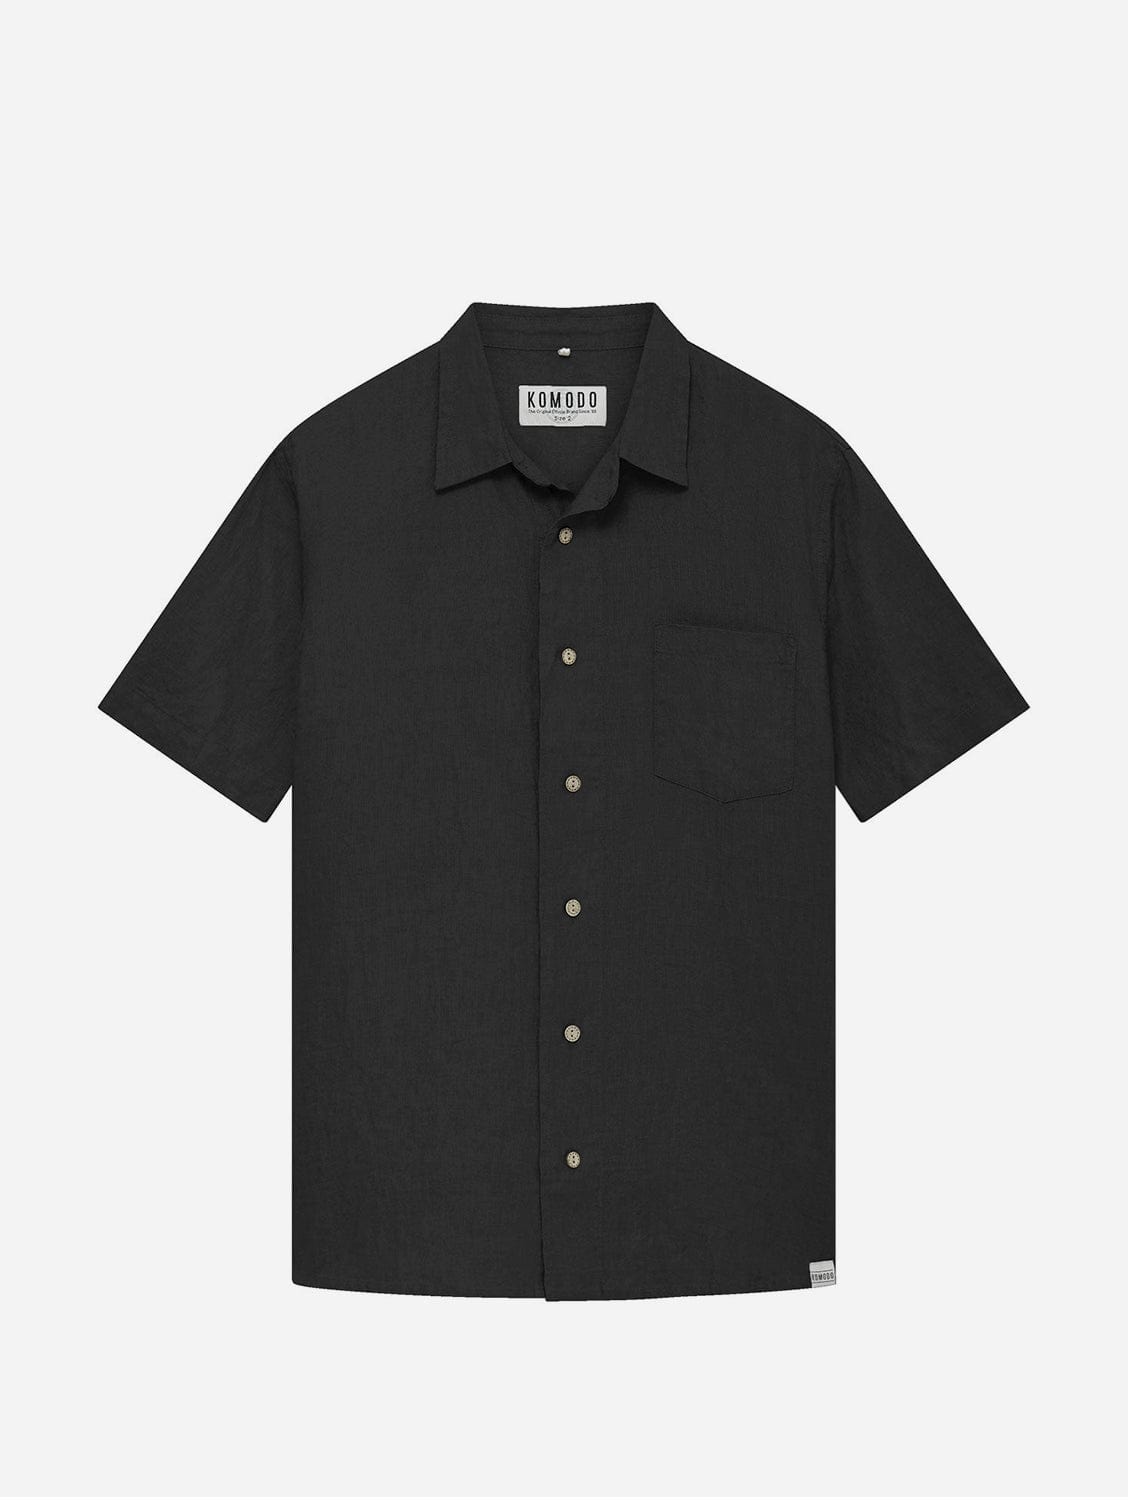 KOMODO DINGWALLS - Linen Shirt Black Small